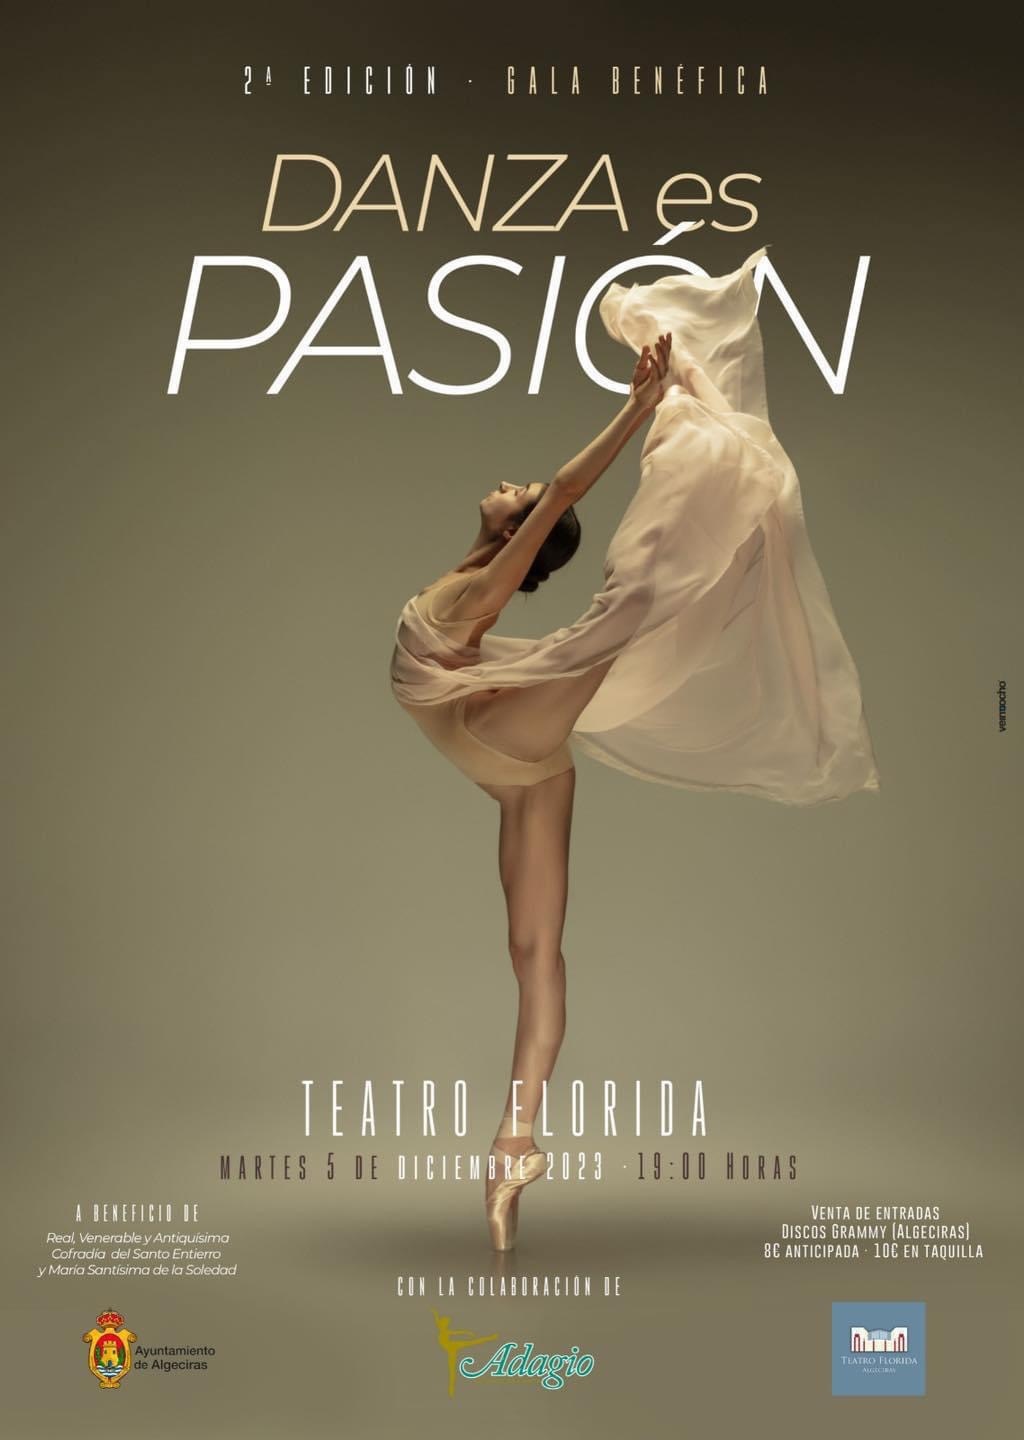 GALA BENÉFICA: “Danza es Pasión” (Segunda Edición)